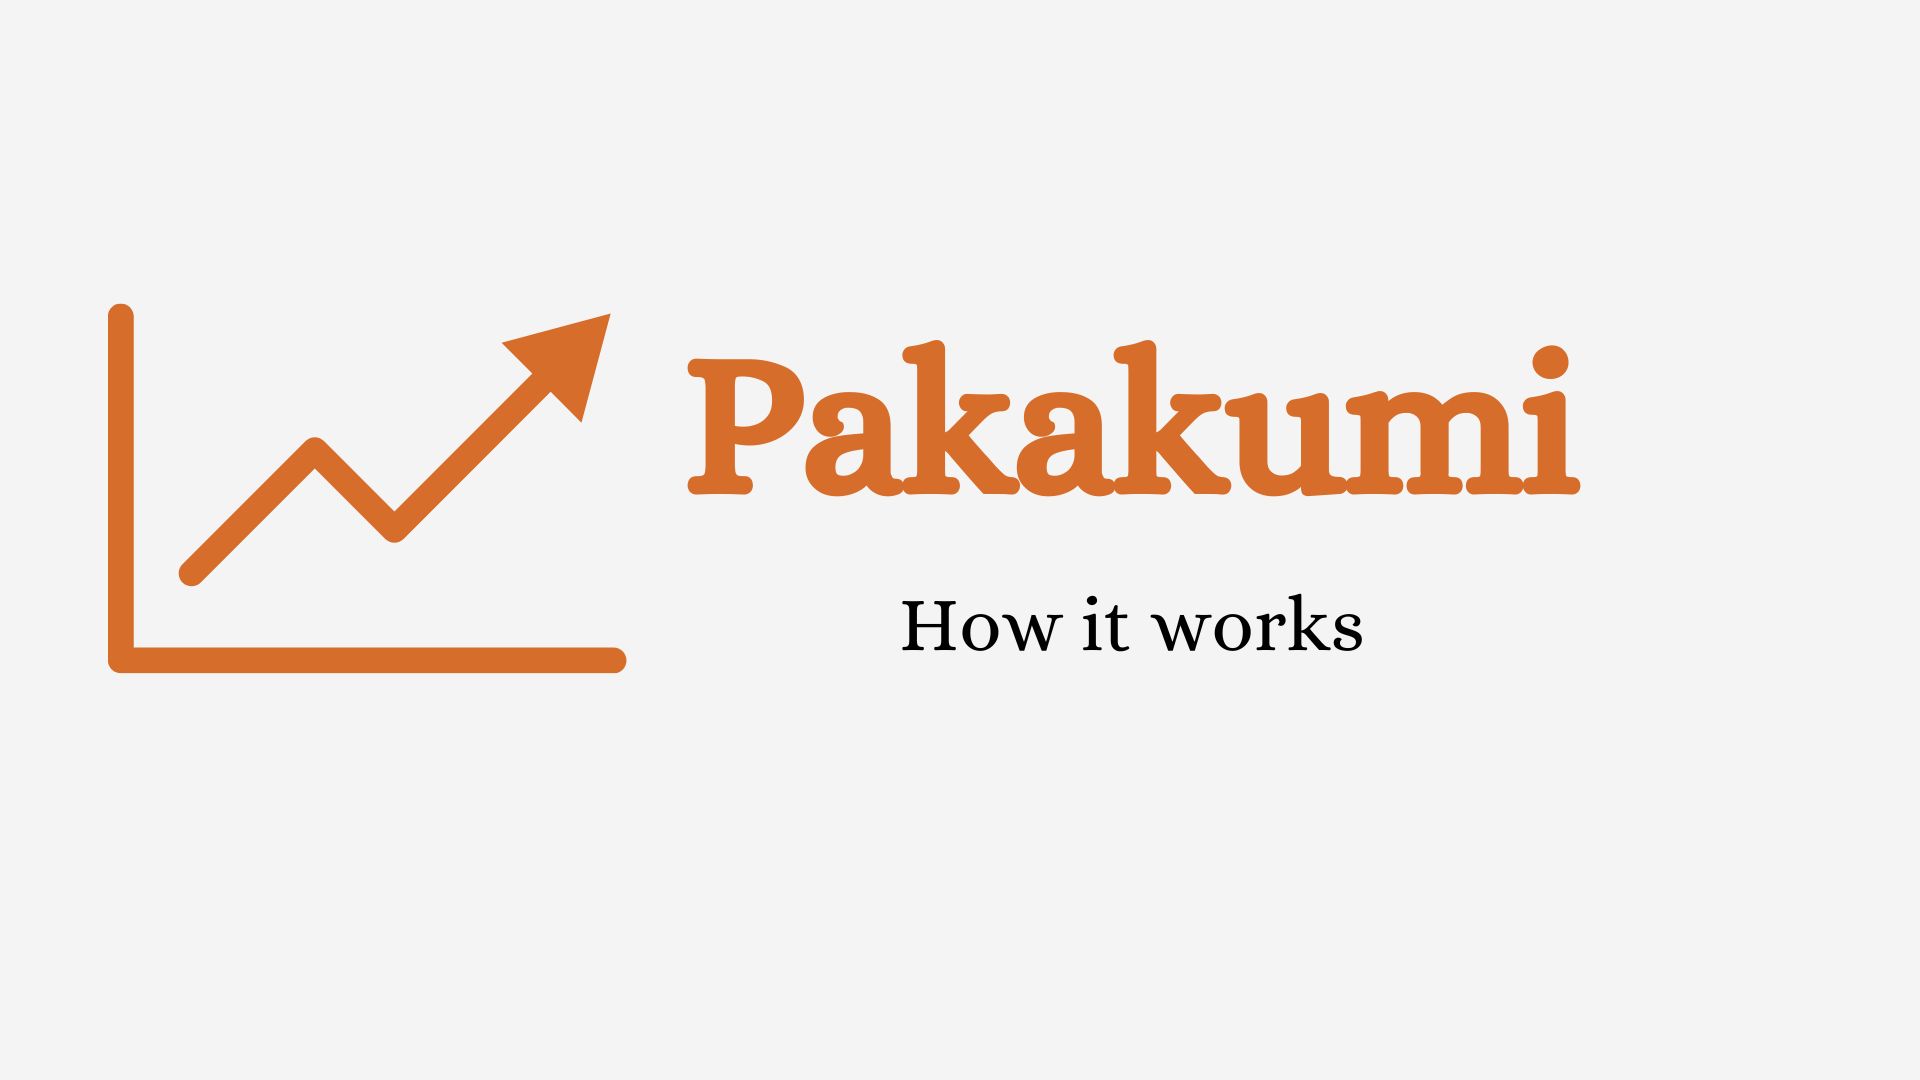 Using Pakakumi